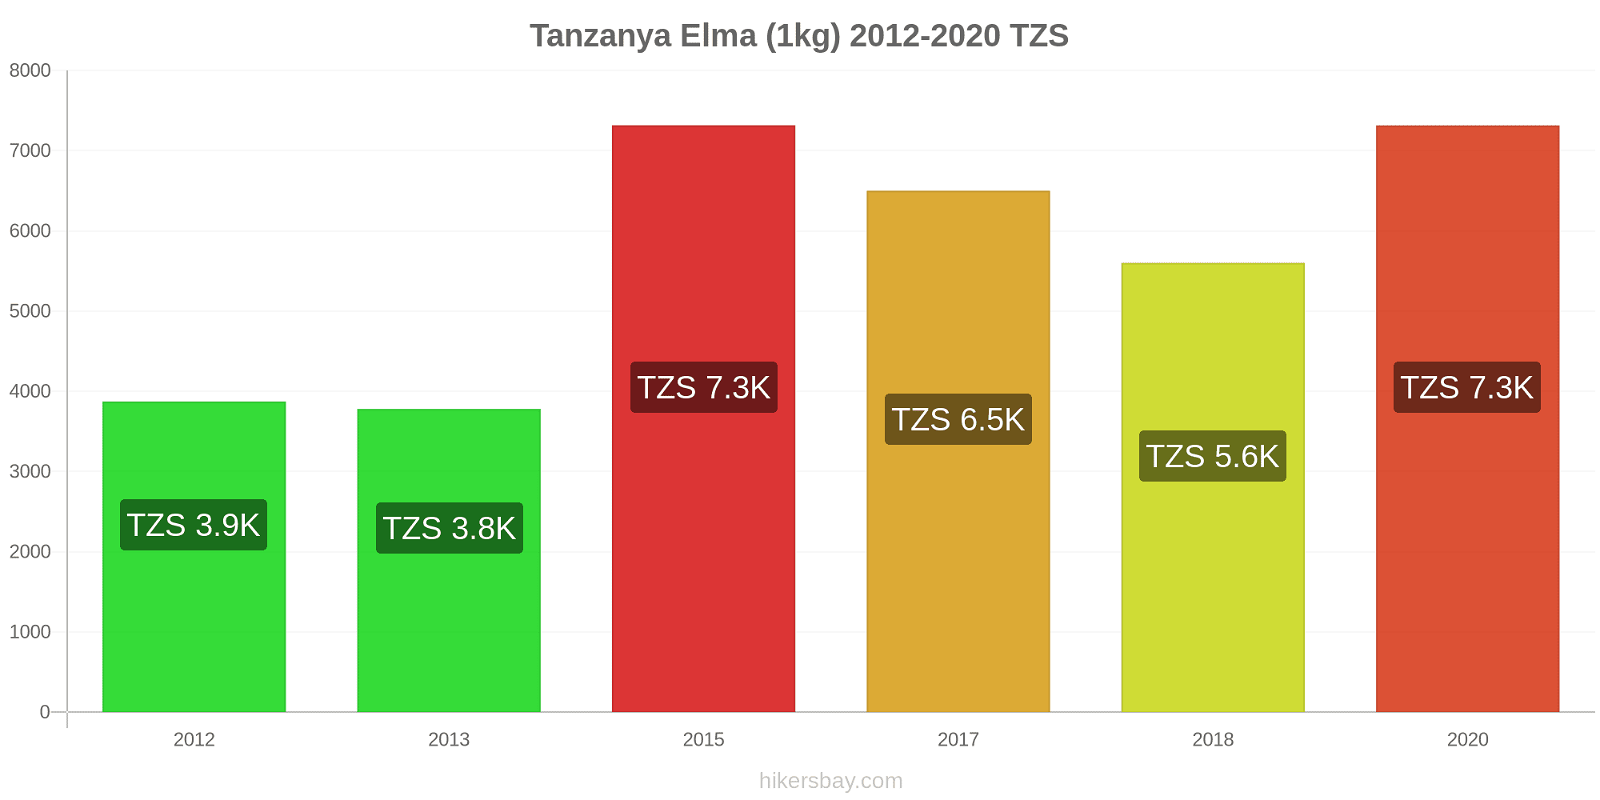 Tanzanya fiyat değişiklikleri Elma (1kg) hikersbay.com